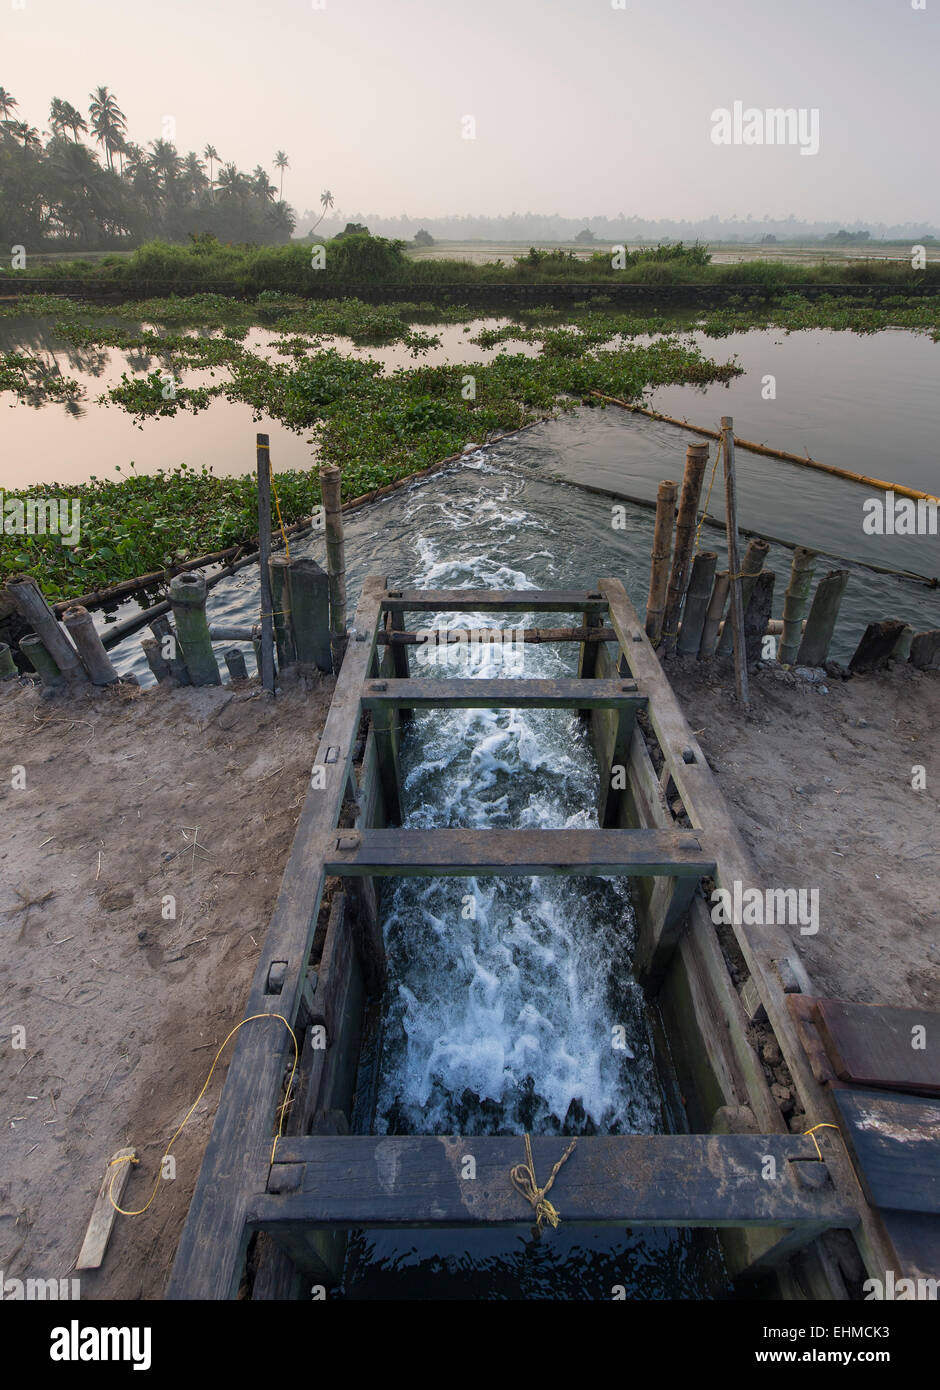 Hölzernes Tor um den Wasserstand der Pokkali Reisfelder zu regulieren, während der Ebbe und Flut, Backwaters, Ernakulam Bezirk eröffnet Stockfoto